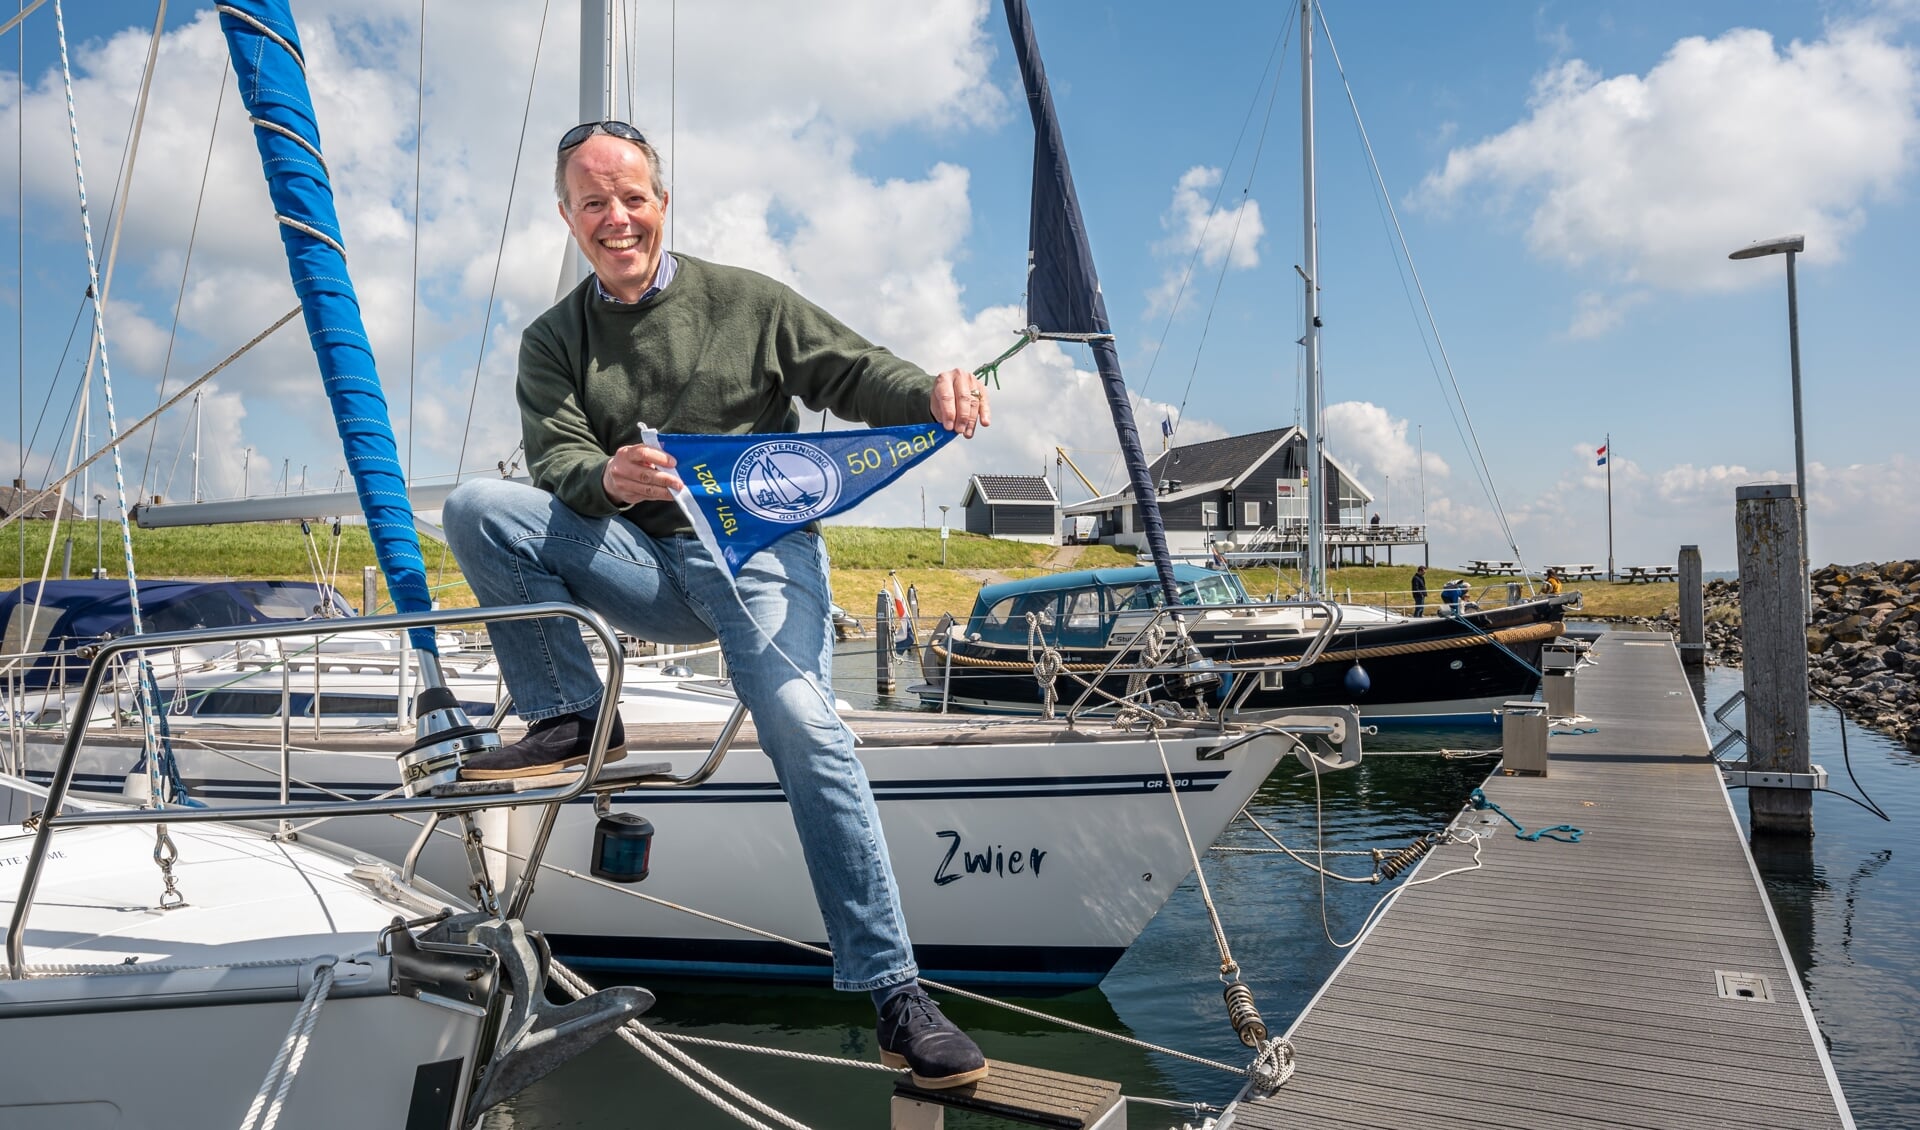 Voorzitter Frederik van der Dussen van WSV Goeree met het jubileumvlaggetje in de Ouddorpse haven (Foto: Wim van Vossen).